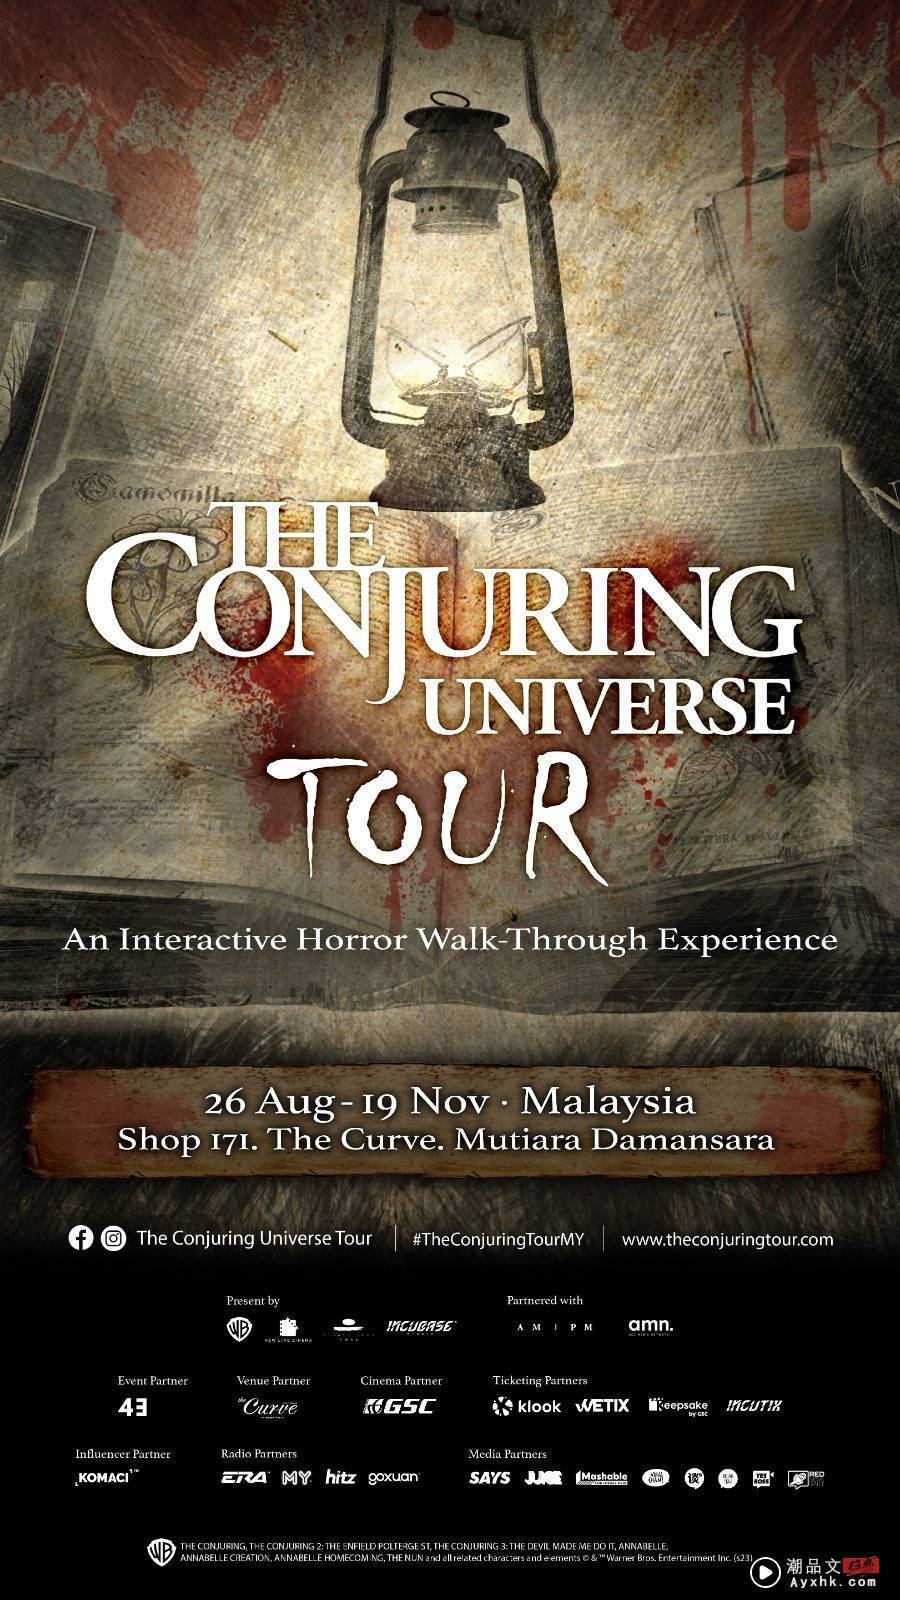 活动 I 《The Conjuring Universe Tour》之旅驾到！8月26日起沉浸式体验最恐怖电影场景 更多热点 图8张